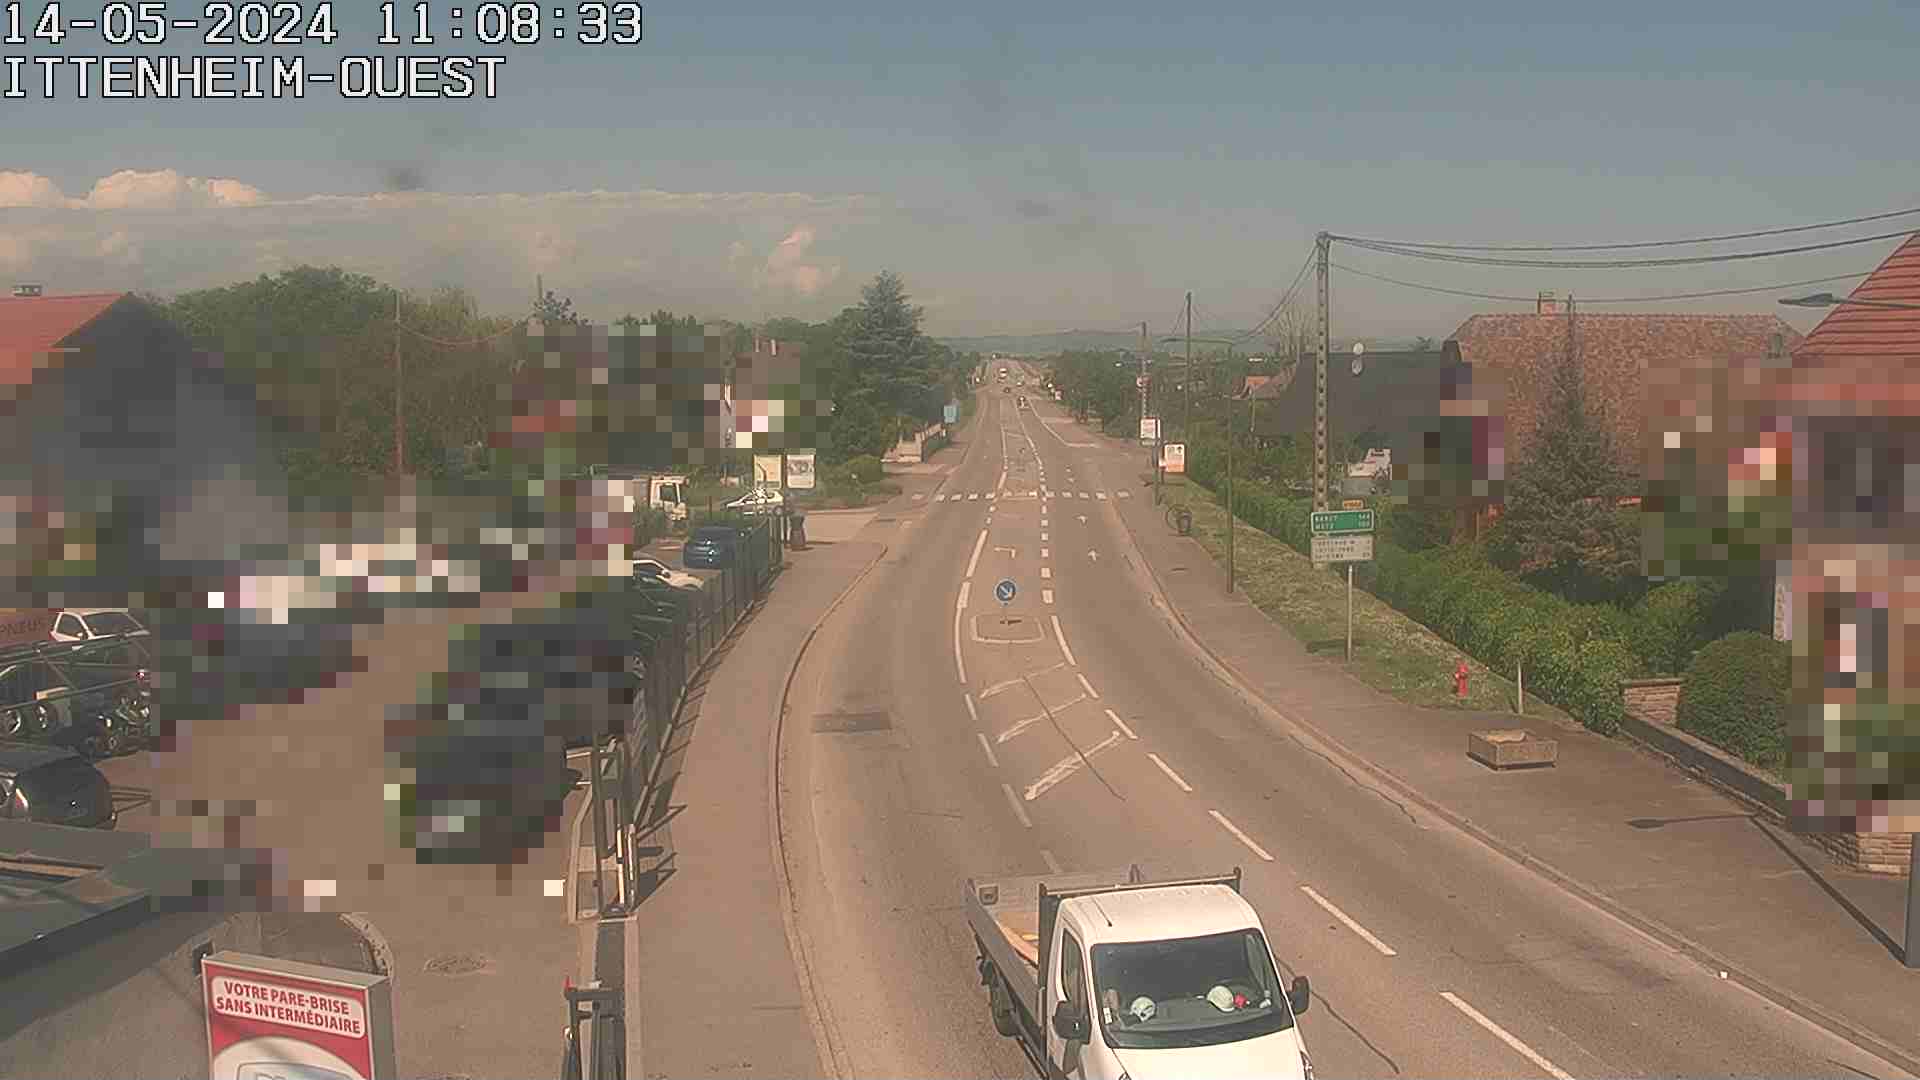 Webcam routière à la fin de la D1004 à la sortie d'Ittenheim en venant de Strasbourg, en provenance du Contournement Ouest de Strasbourg (A355) et de la Nationale 4